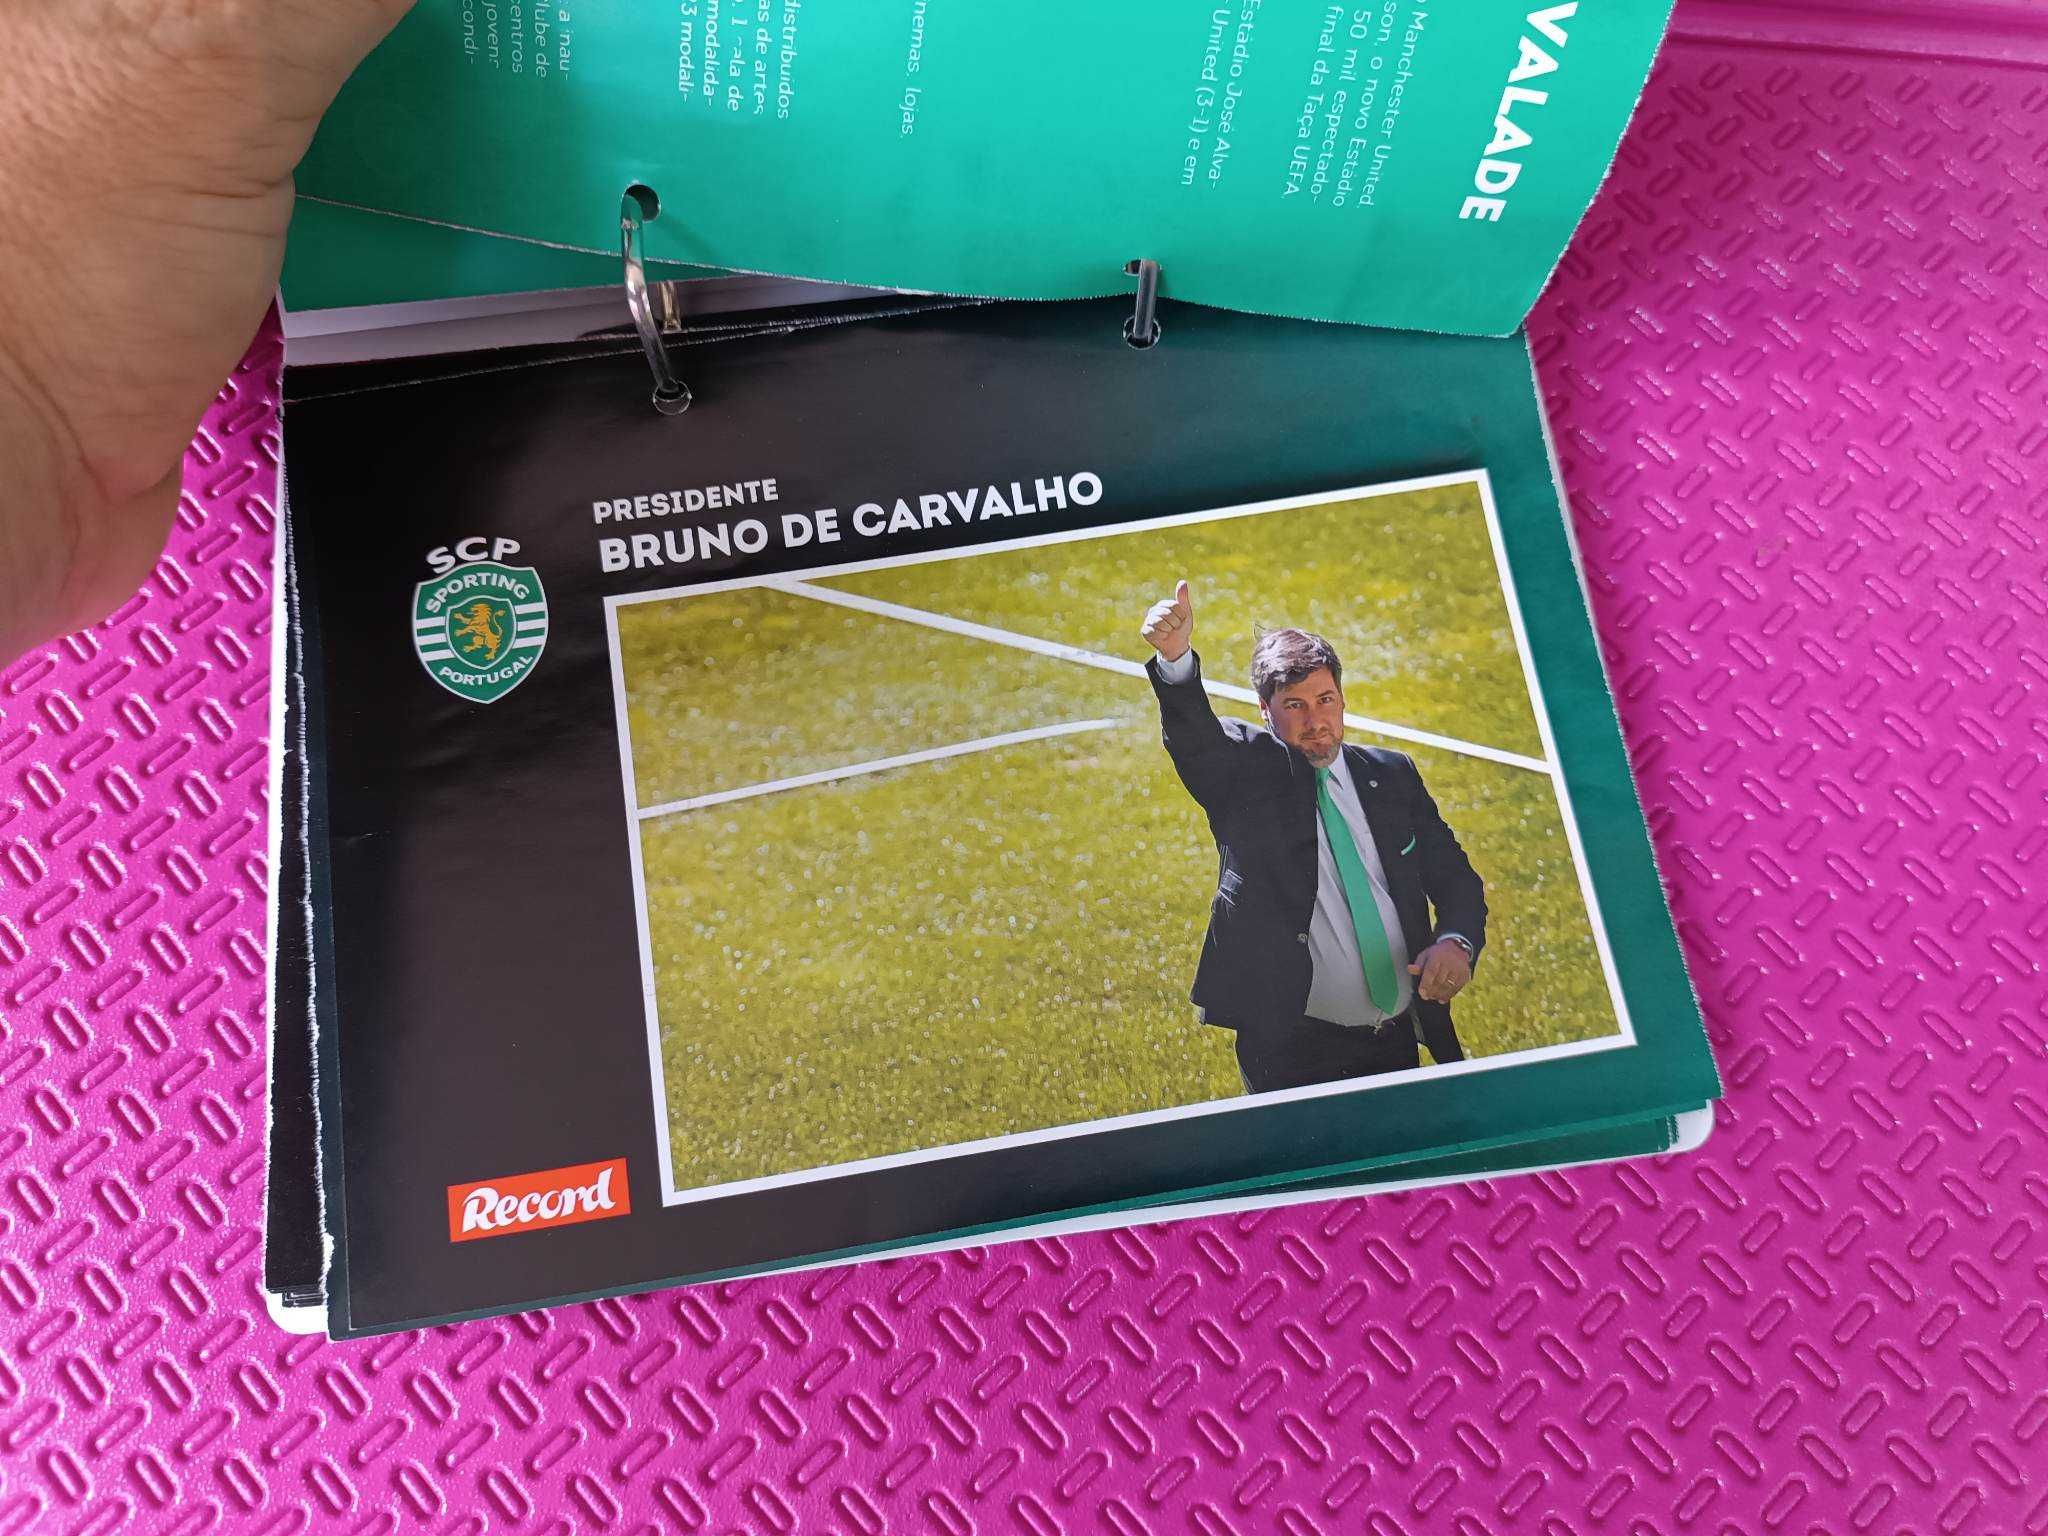 Colecção em fascículos plantel Sporting 2014/2015